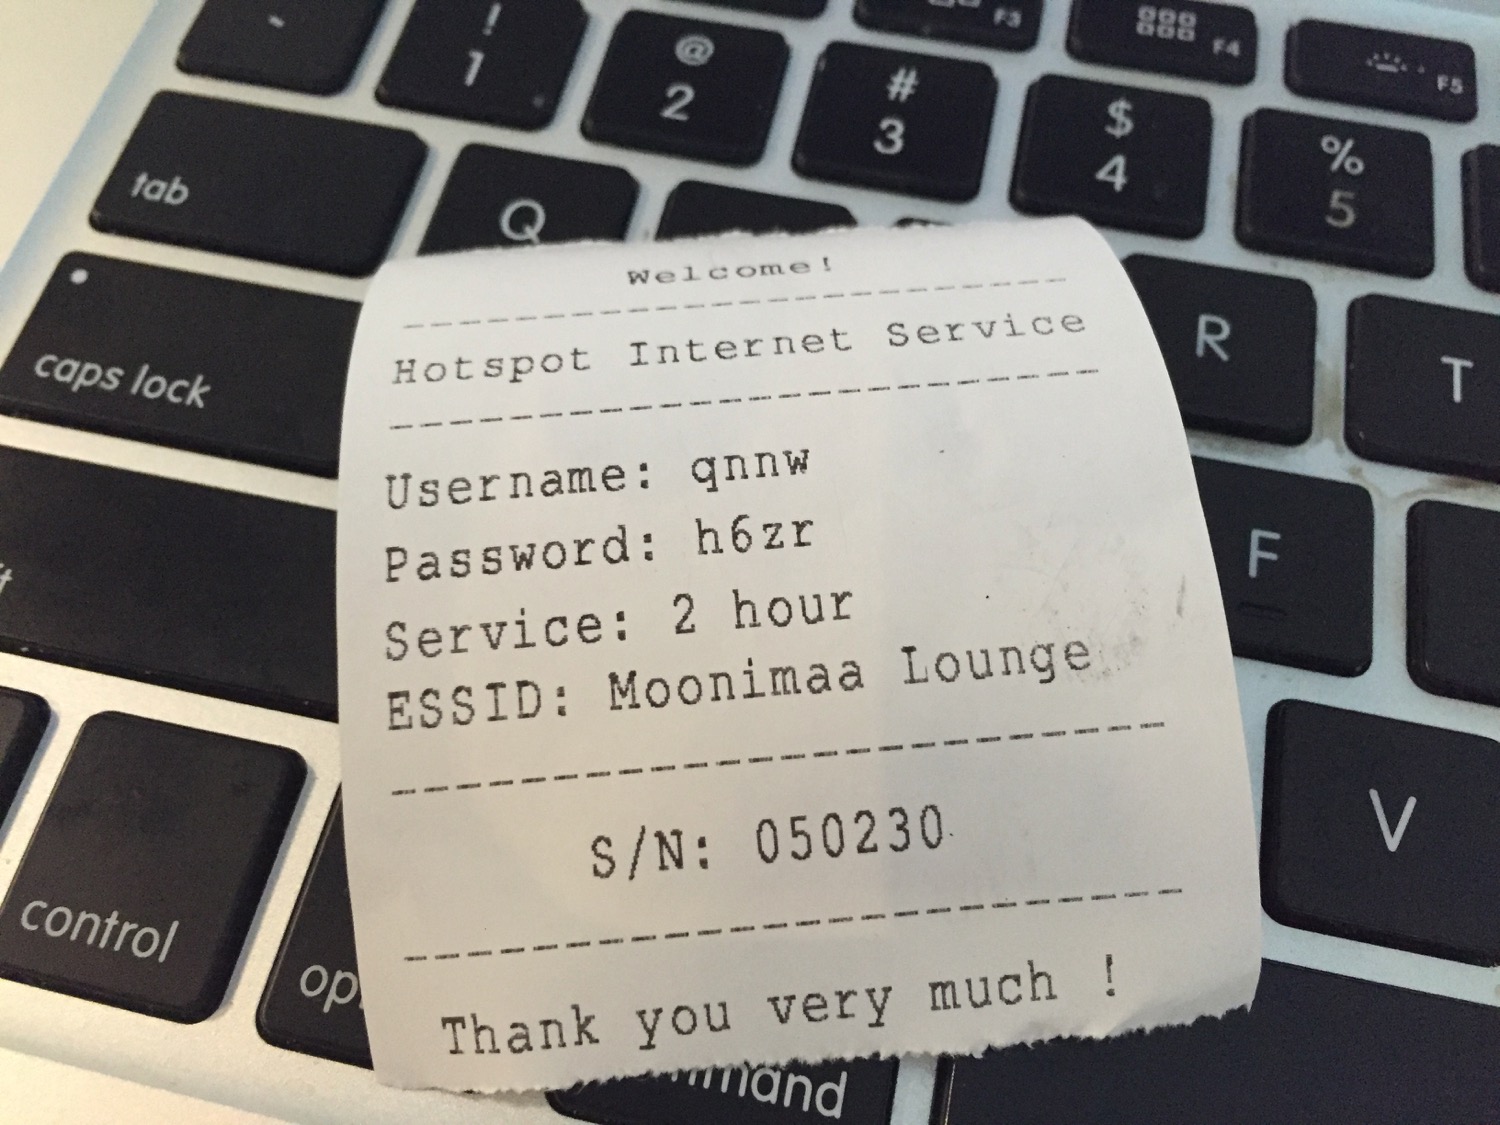 a paper receipt on a keyboard